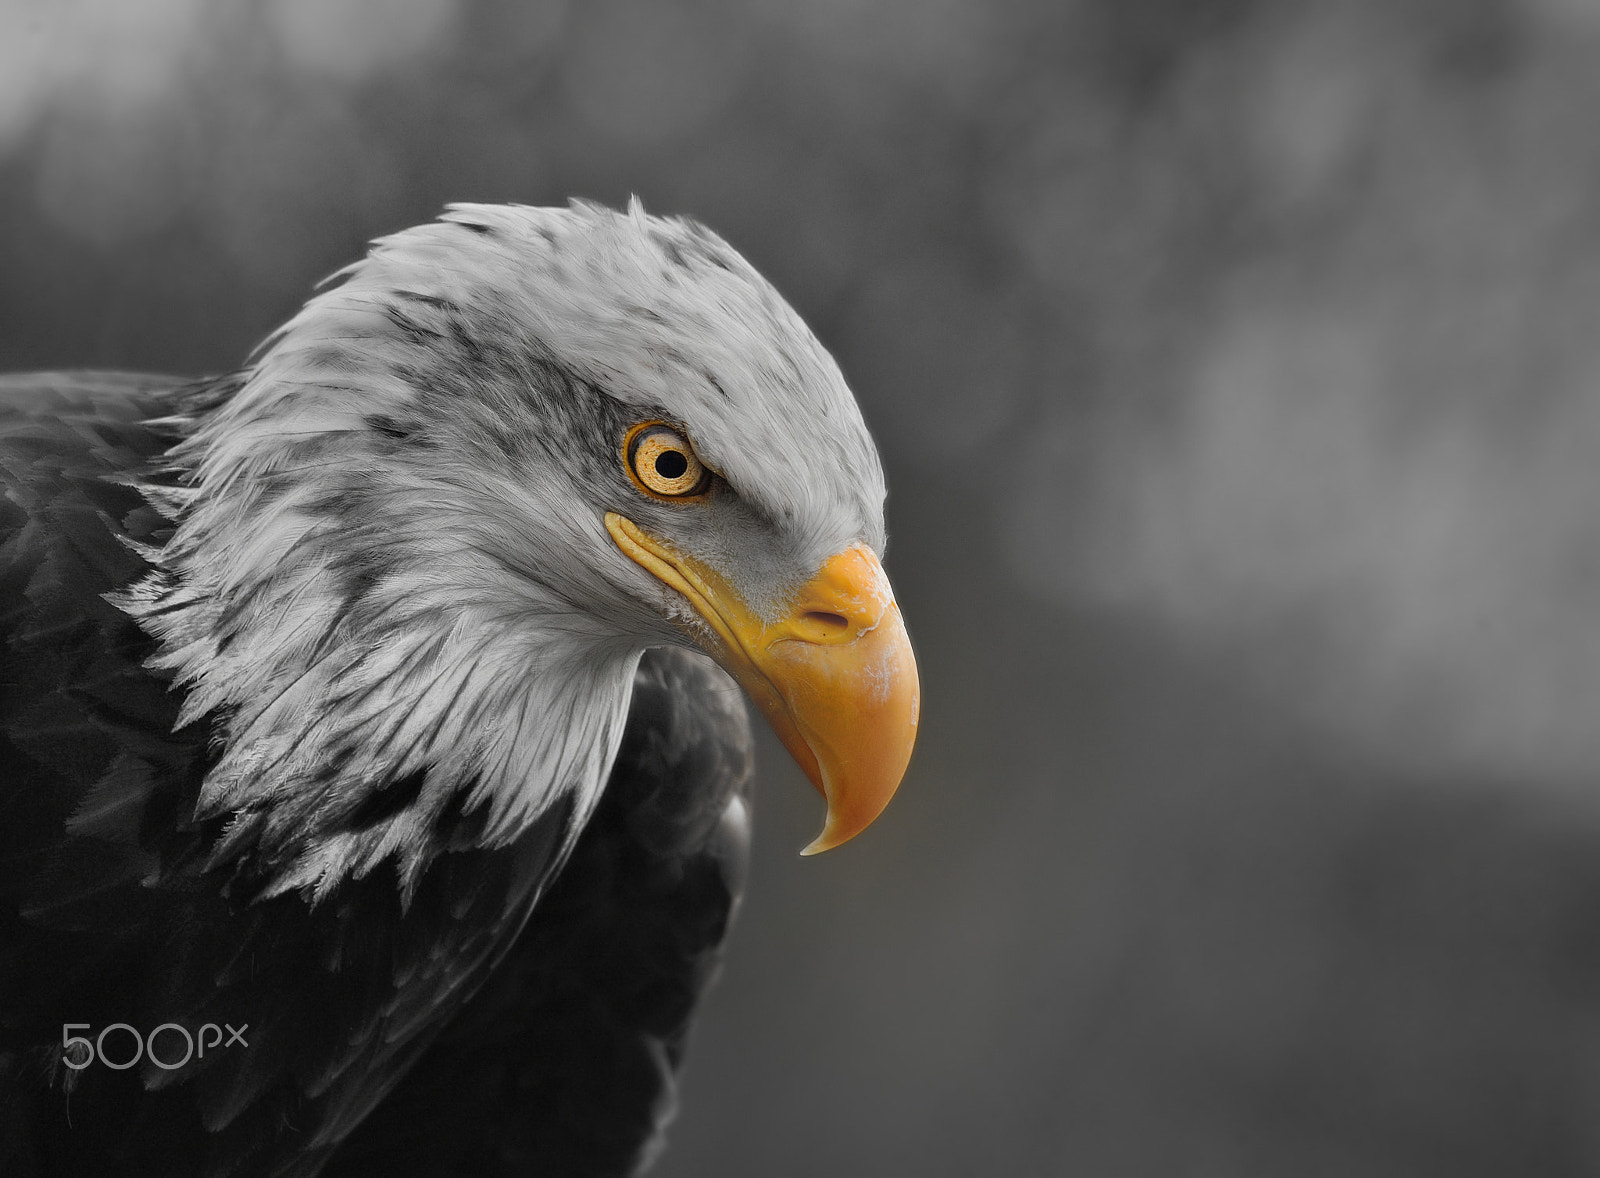 Nikon D800E sample photo. Pensive eagle photography